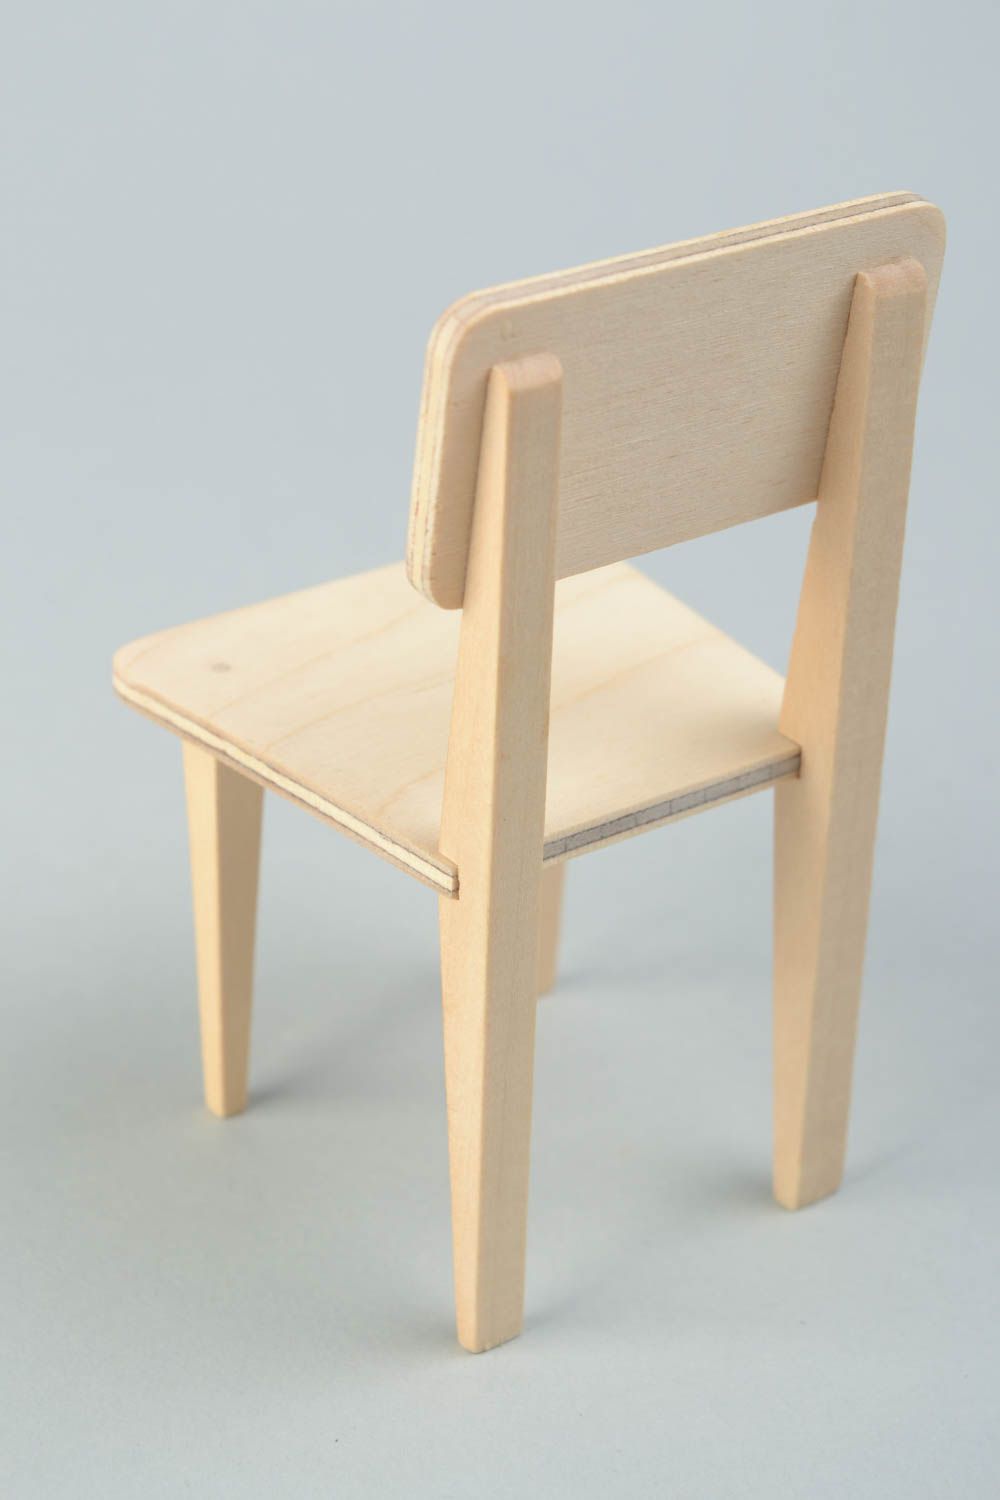 Hölzerner Rohling Stuhl zum Bemalen oder für Decoupage für Puppen Handarbeit foto 4